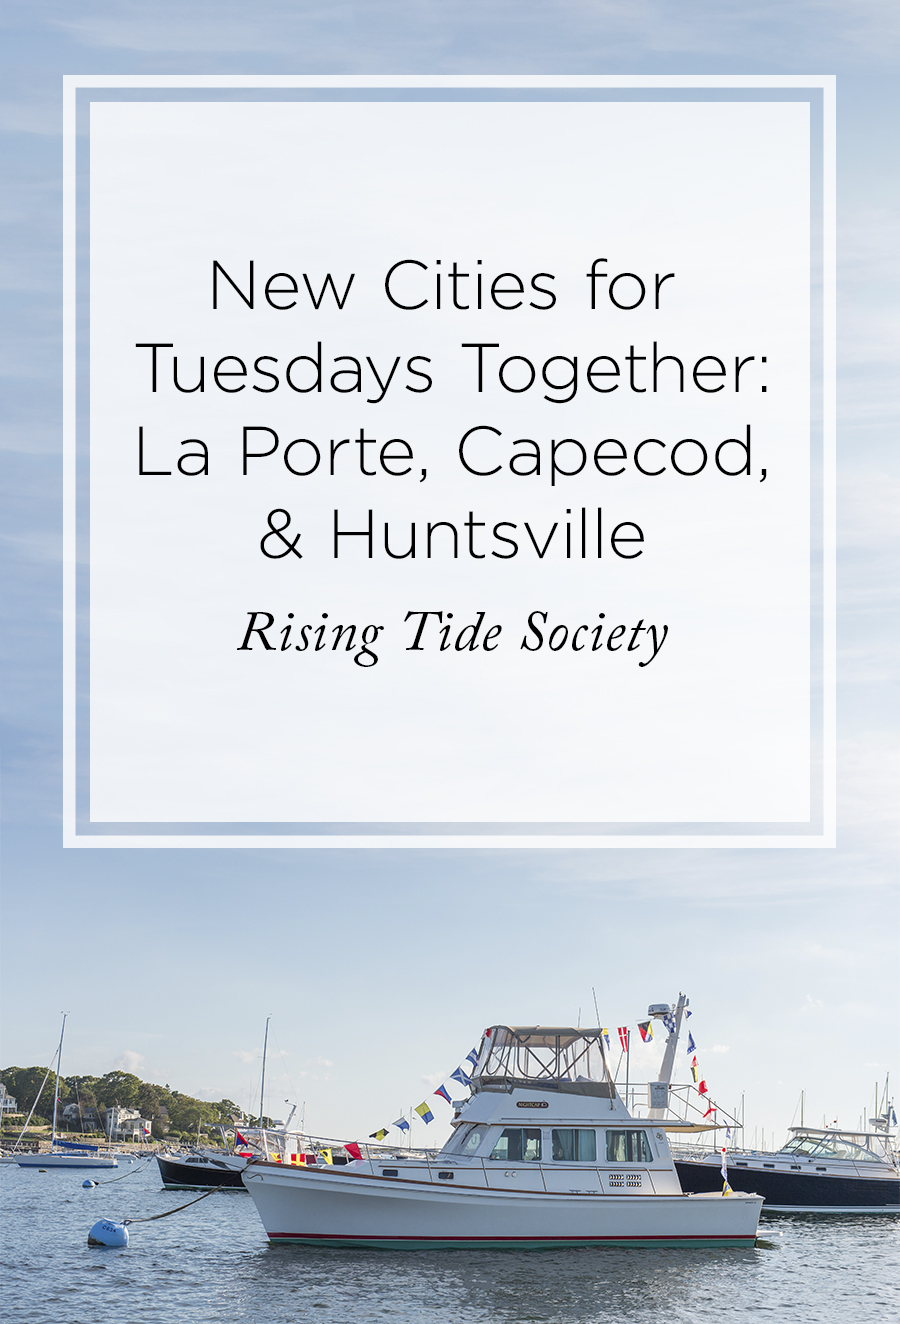 Tuesdays Togeth in La Porte, Capecod, and Huntsvile